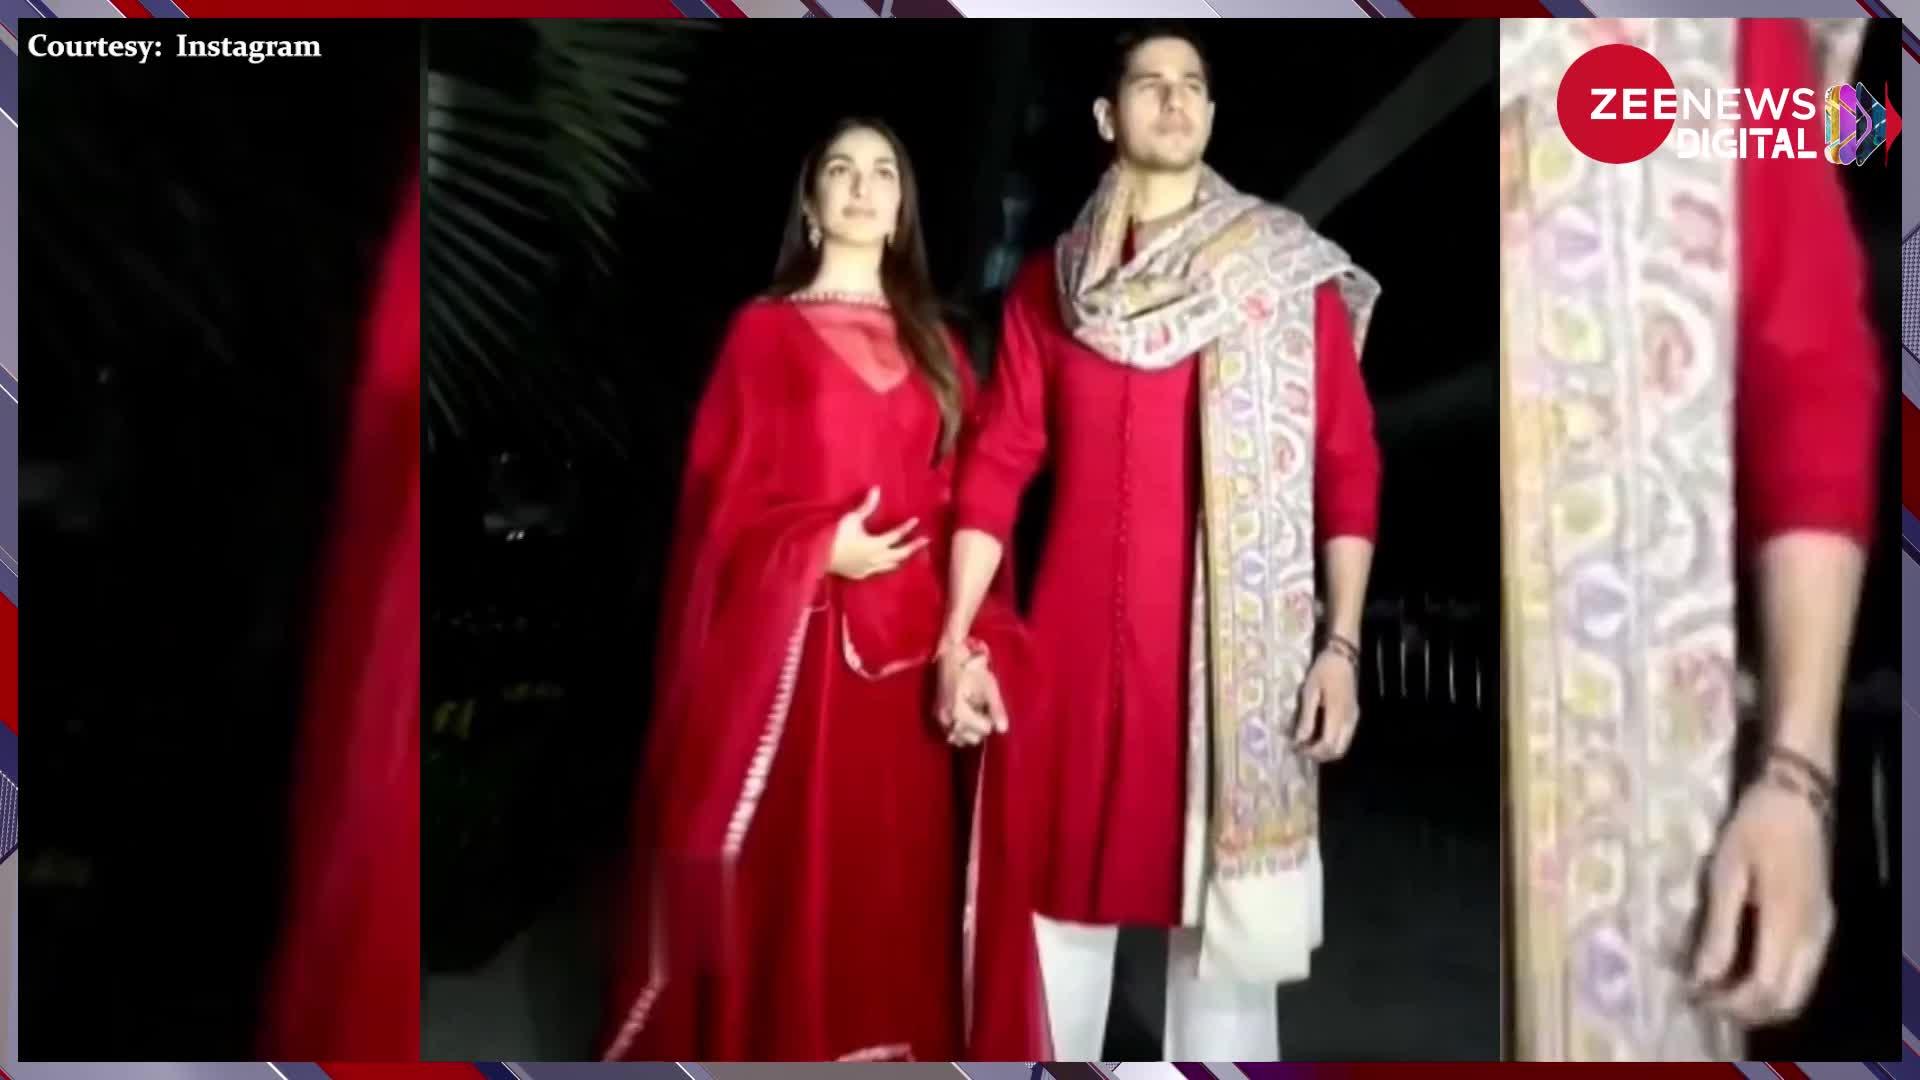 हाथो में हाथ डाले गृह प्रवेश करने अपने घर पहुंचे Sidharth Malhotra और Kiara Advani, लाल रंग पहने दिखा जोड़ा